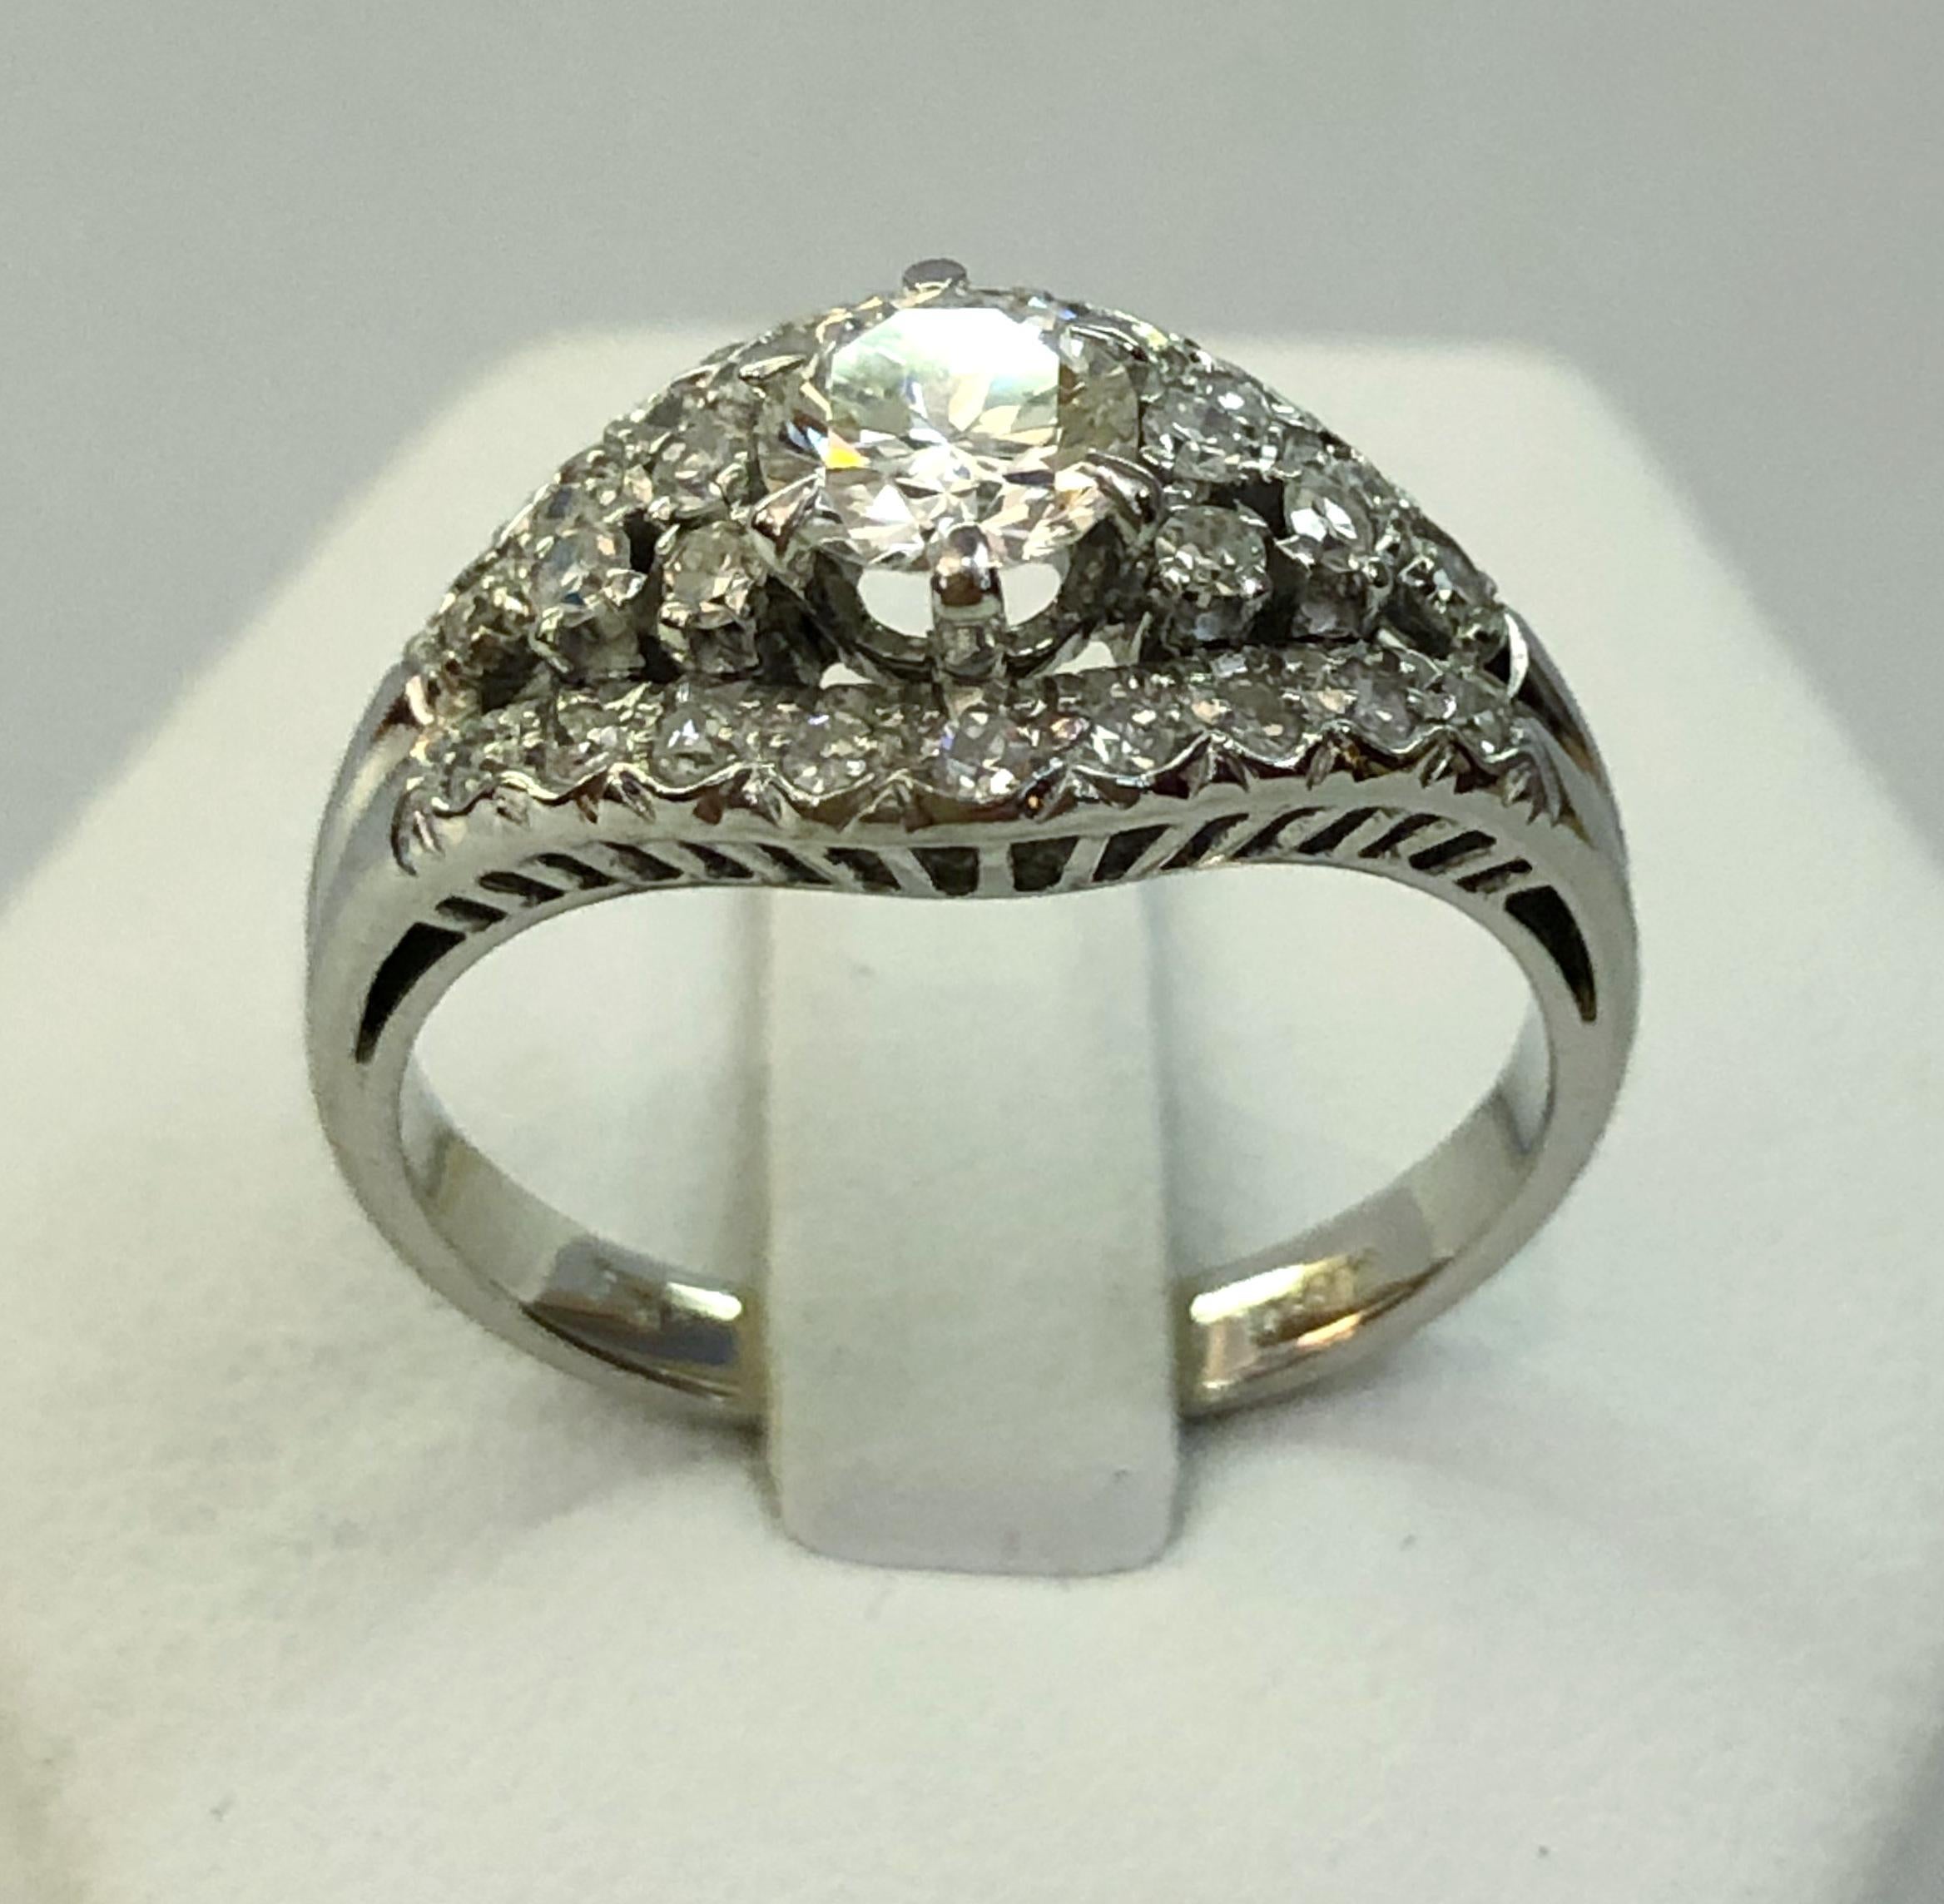 Ring aus 18 Karat Weißgold mit einem zentralen Diamanten von 0,5 Karat und kleinen Brillanten an der Stange / Italien 1950-1960er Jahre
Ringgröße US 7